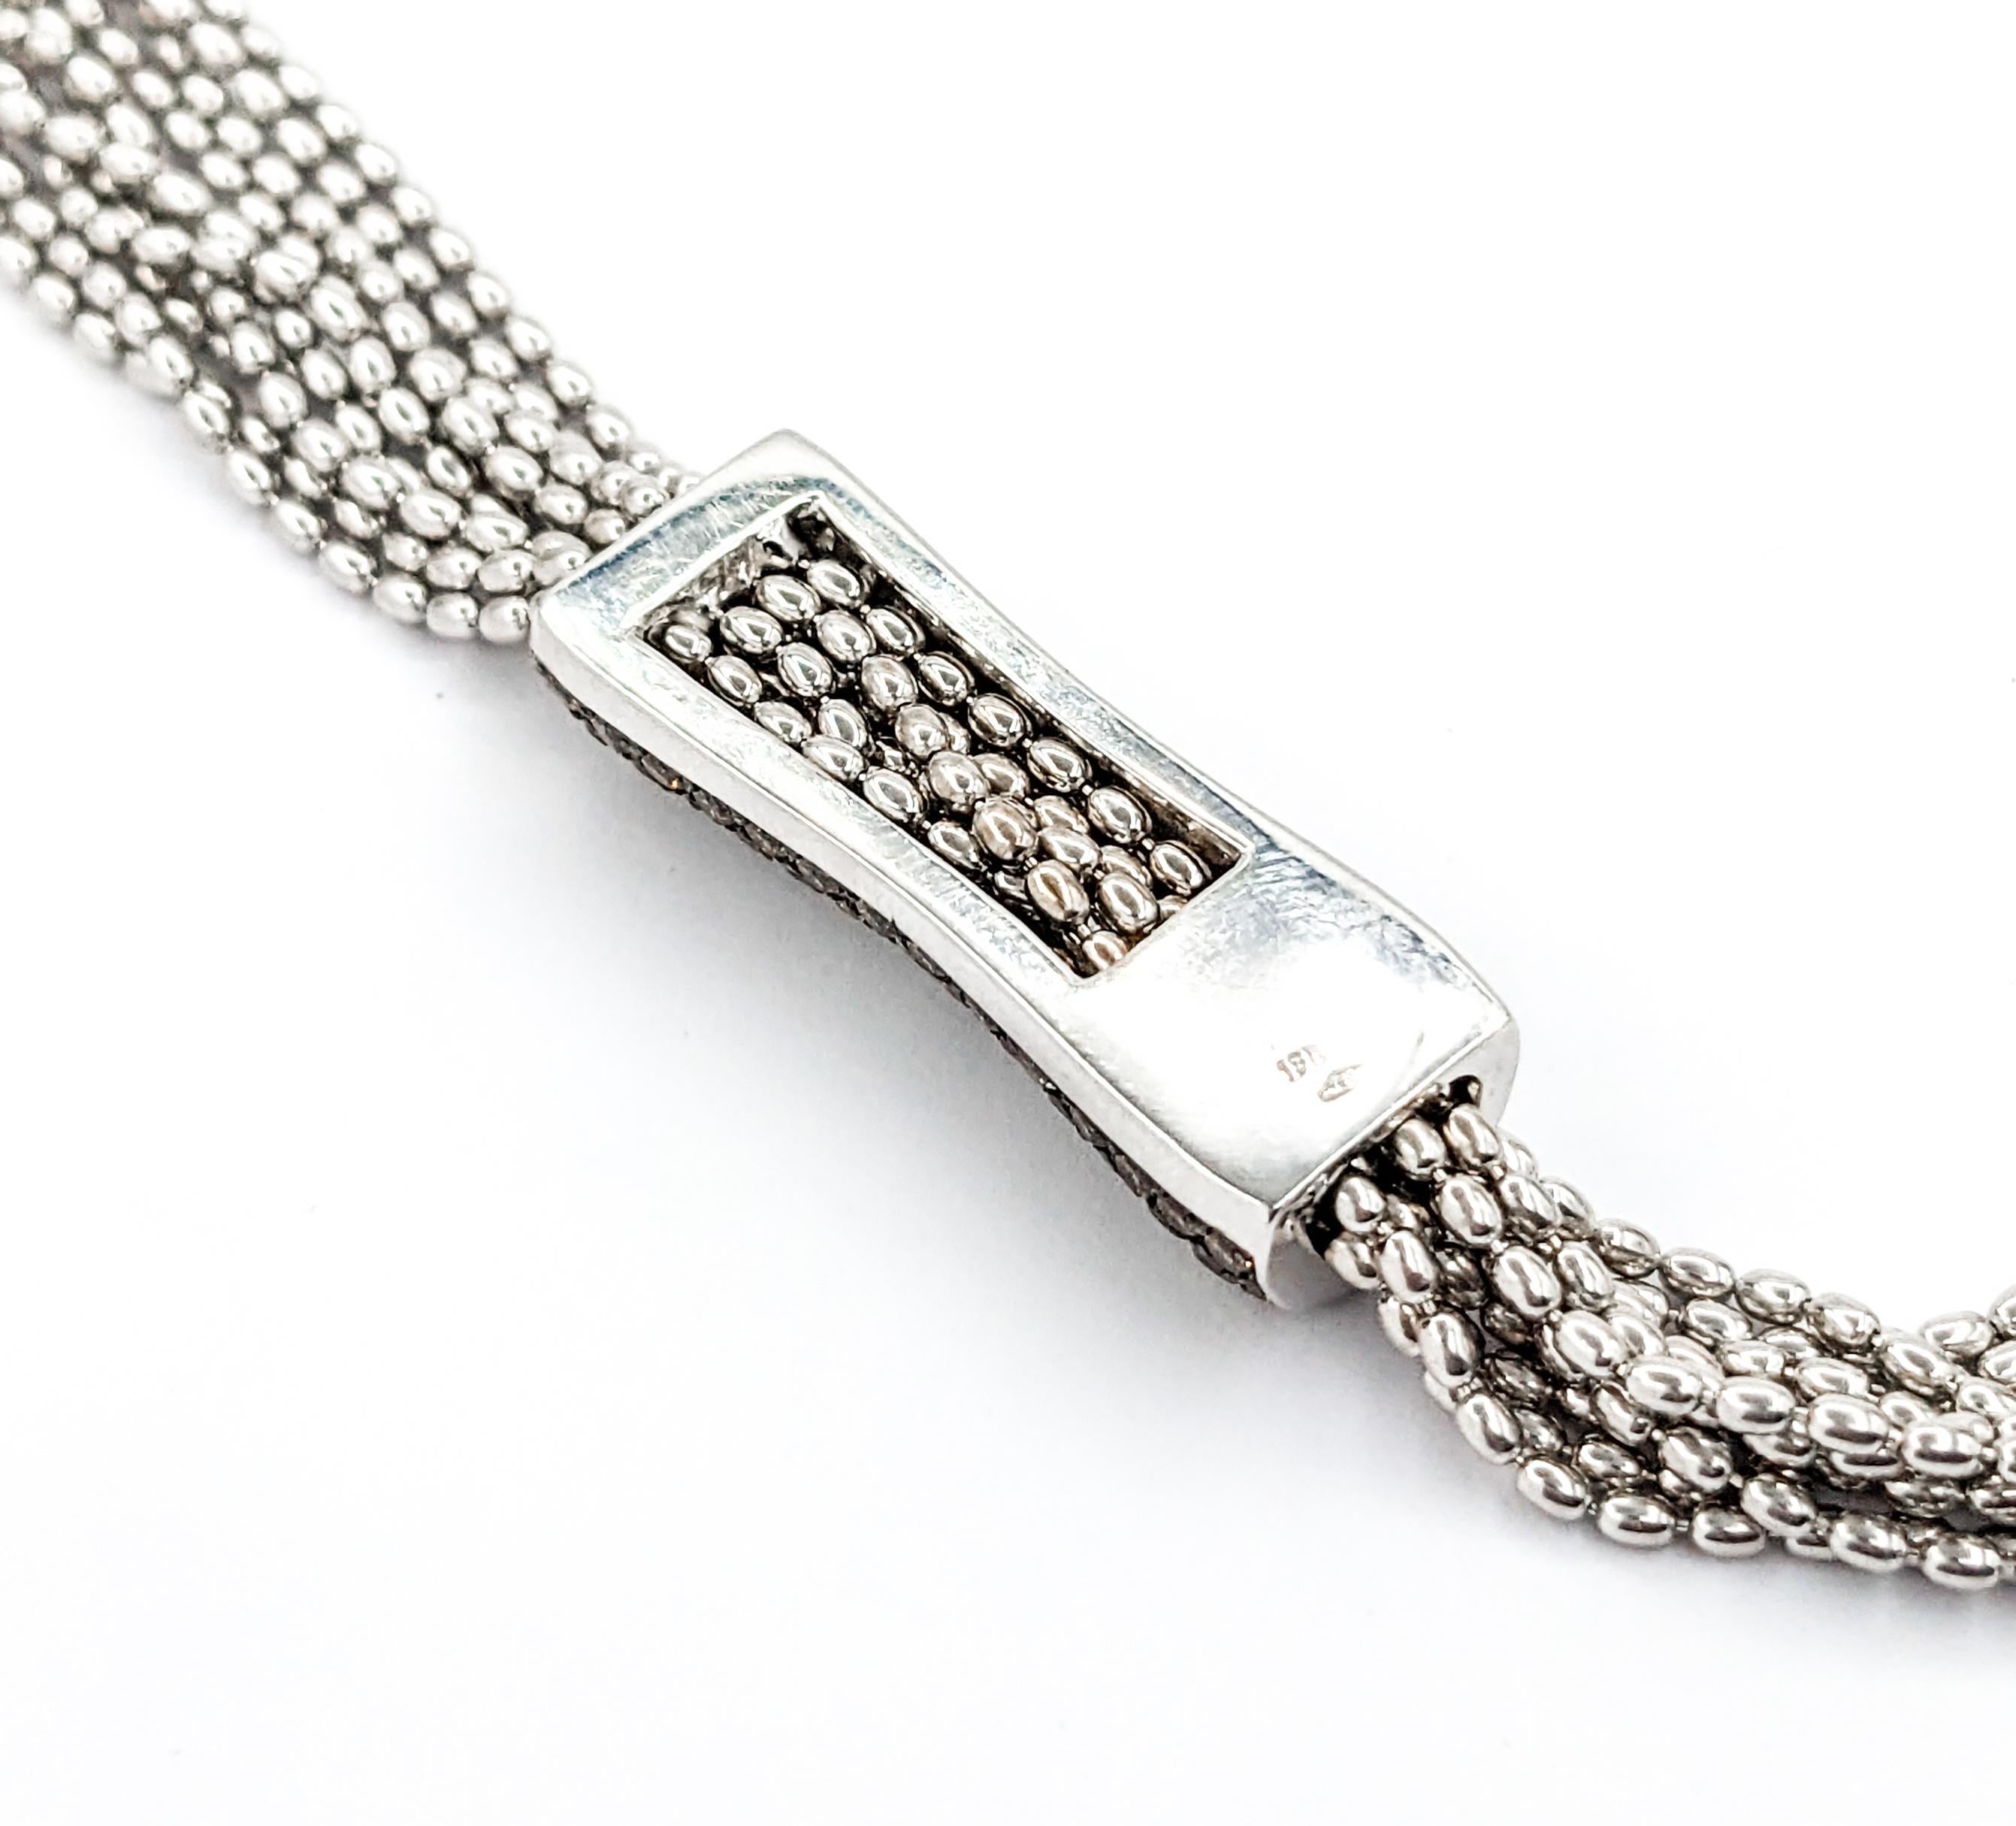 2.50ctw Diamond 5 Strand Mock Bolo design In White Gold

Voici l'exquis collier Diamond Fashion, doté d'un design Mock Bolo à 5 brins, méticuleusement réalisé en or blanc 18kt. Cette chaîne luxueuse est ornée de 2,50ctw de diamants, dont des